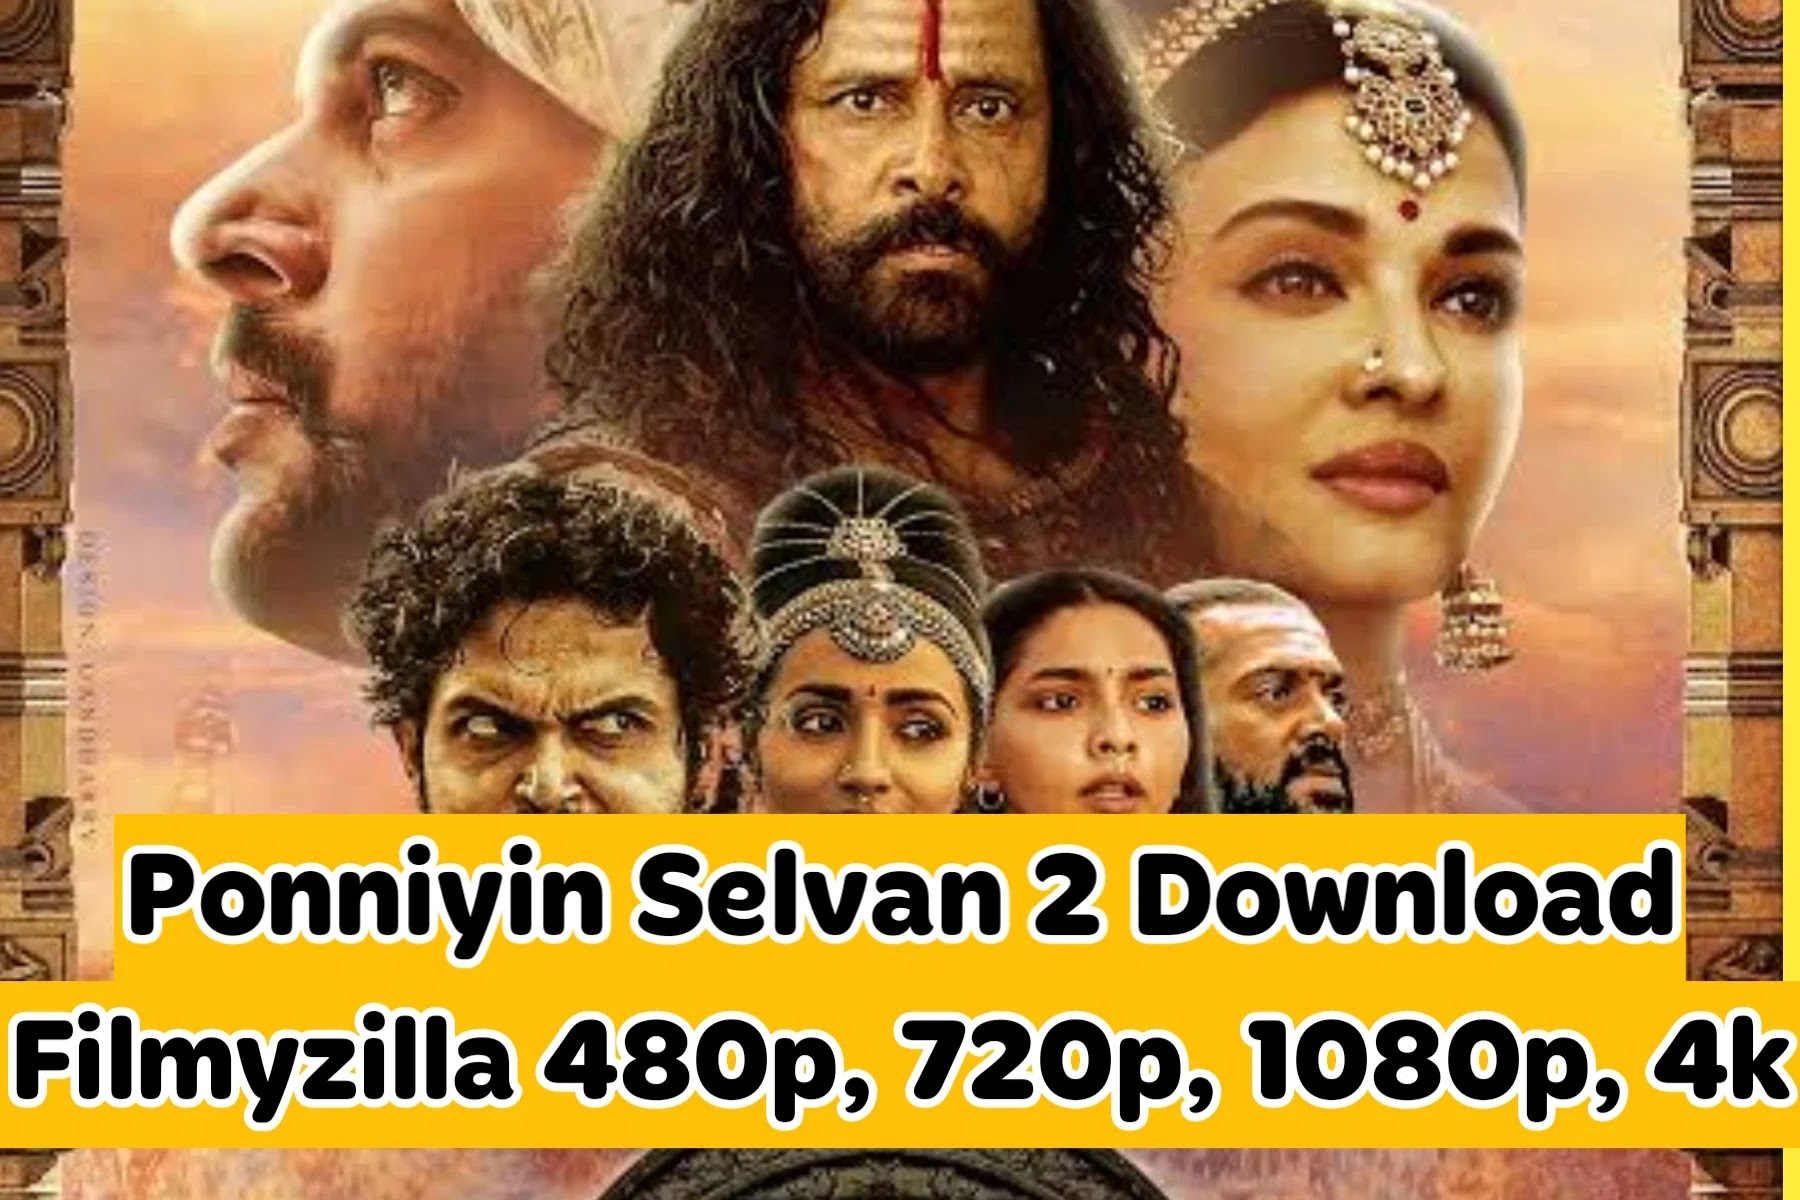 Ponniyin Selvan PS2 Movie Download